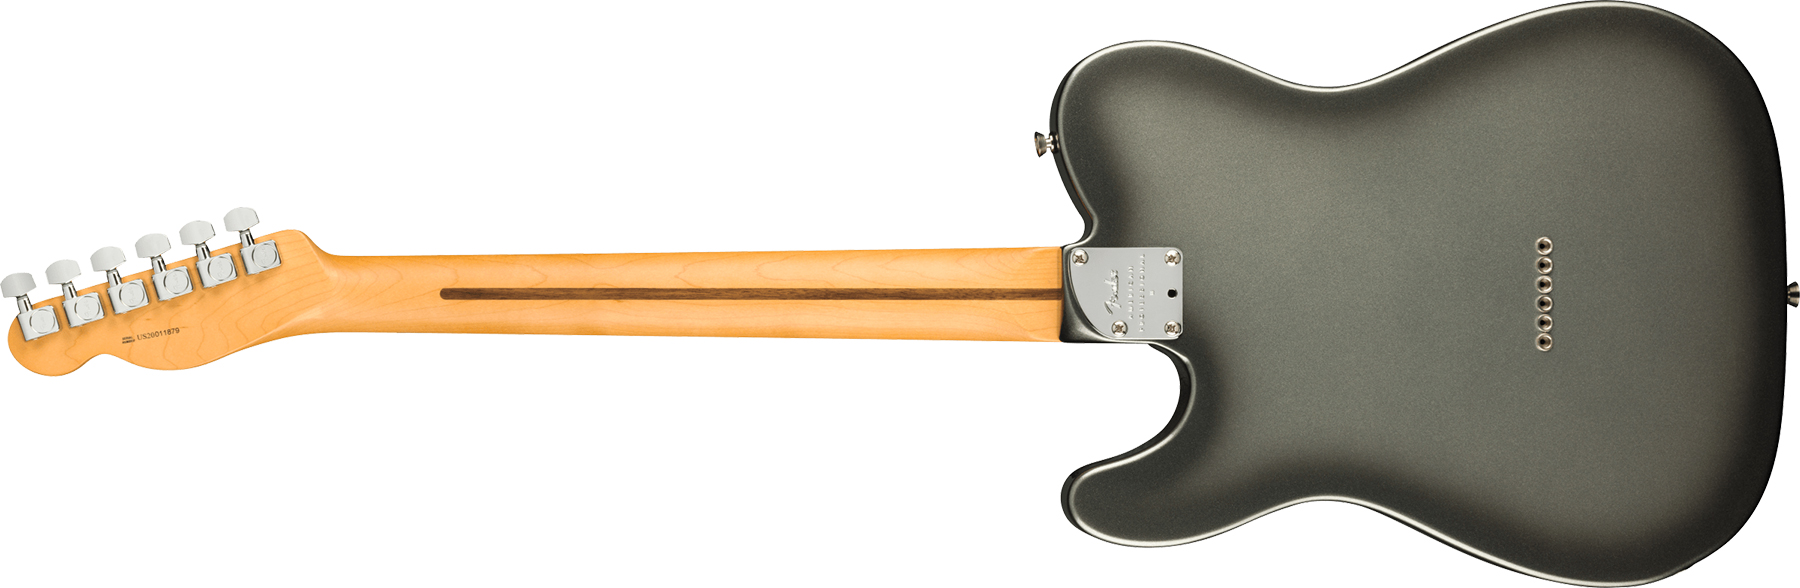 Fender Tele American Professional Ii Usa Rw - Mercury - Guitarra eléctrica con forma de tel - Variation 1